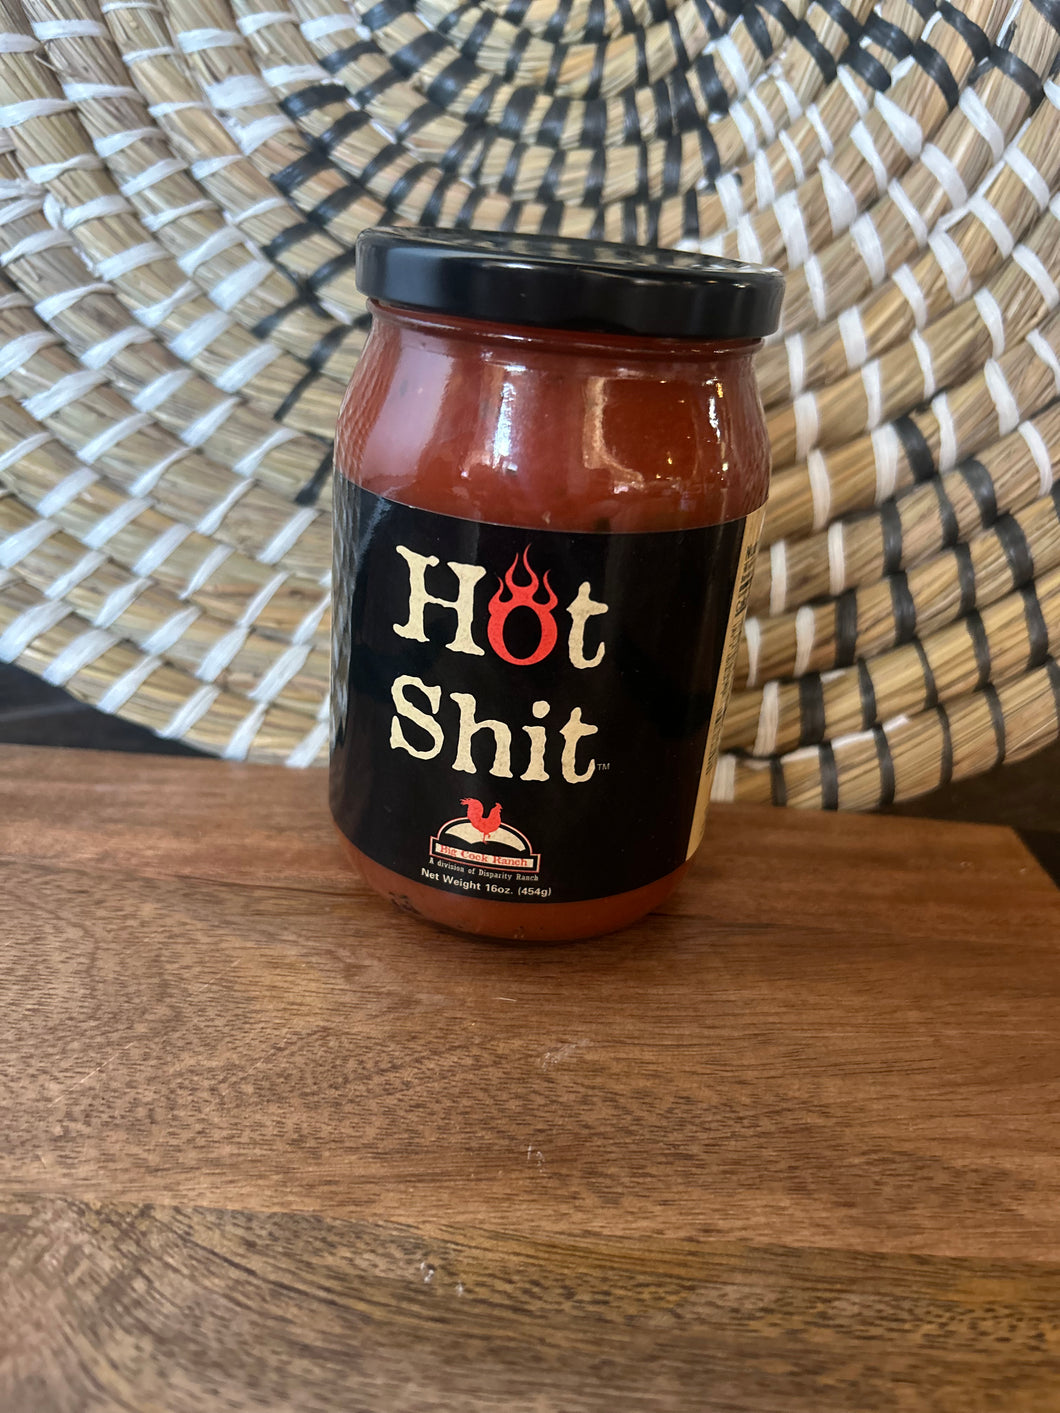 Hot shit salsa